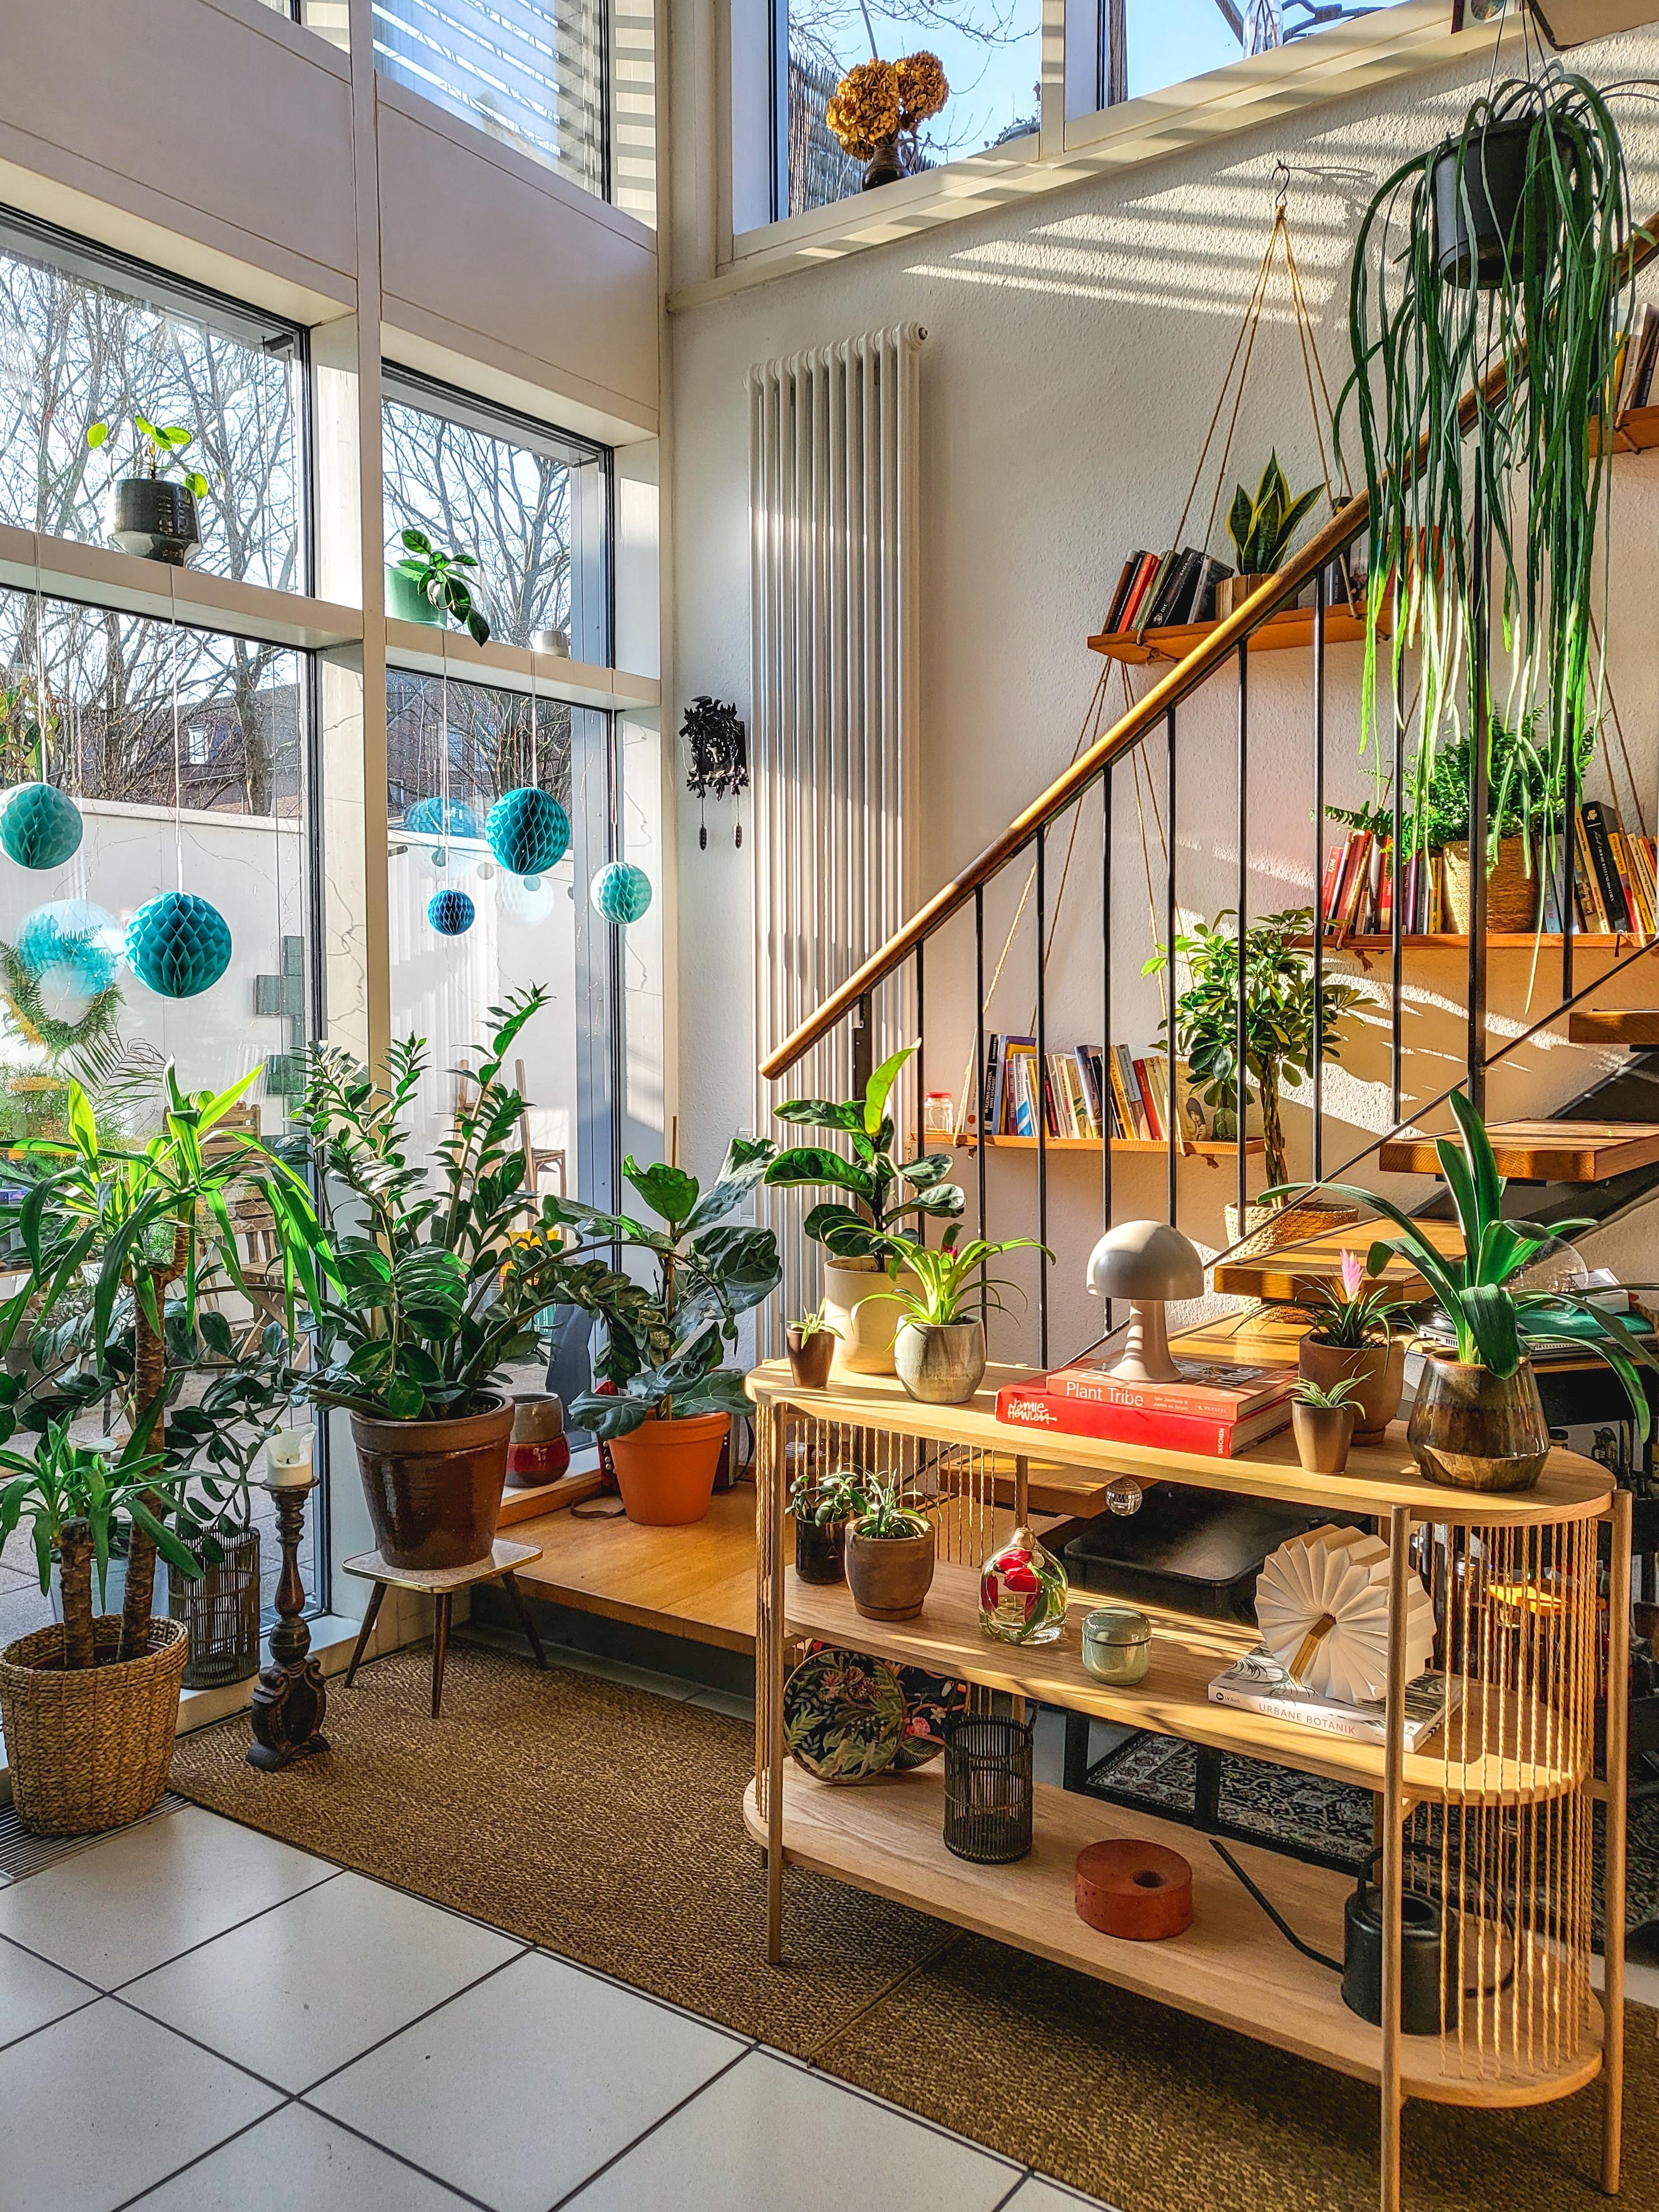 #urbanjungle
#sideboard
#Sonne
#Wohnzimmer
#Pflanzen
#bücherregal